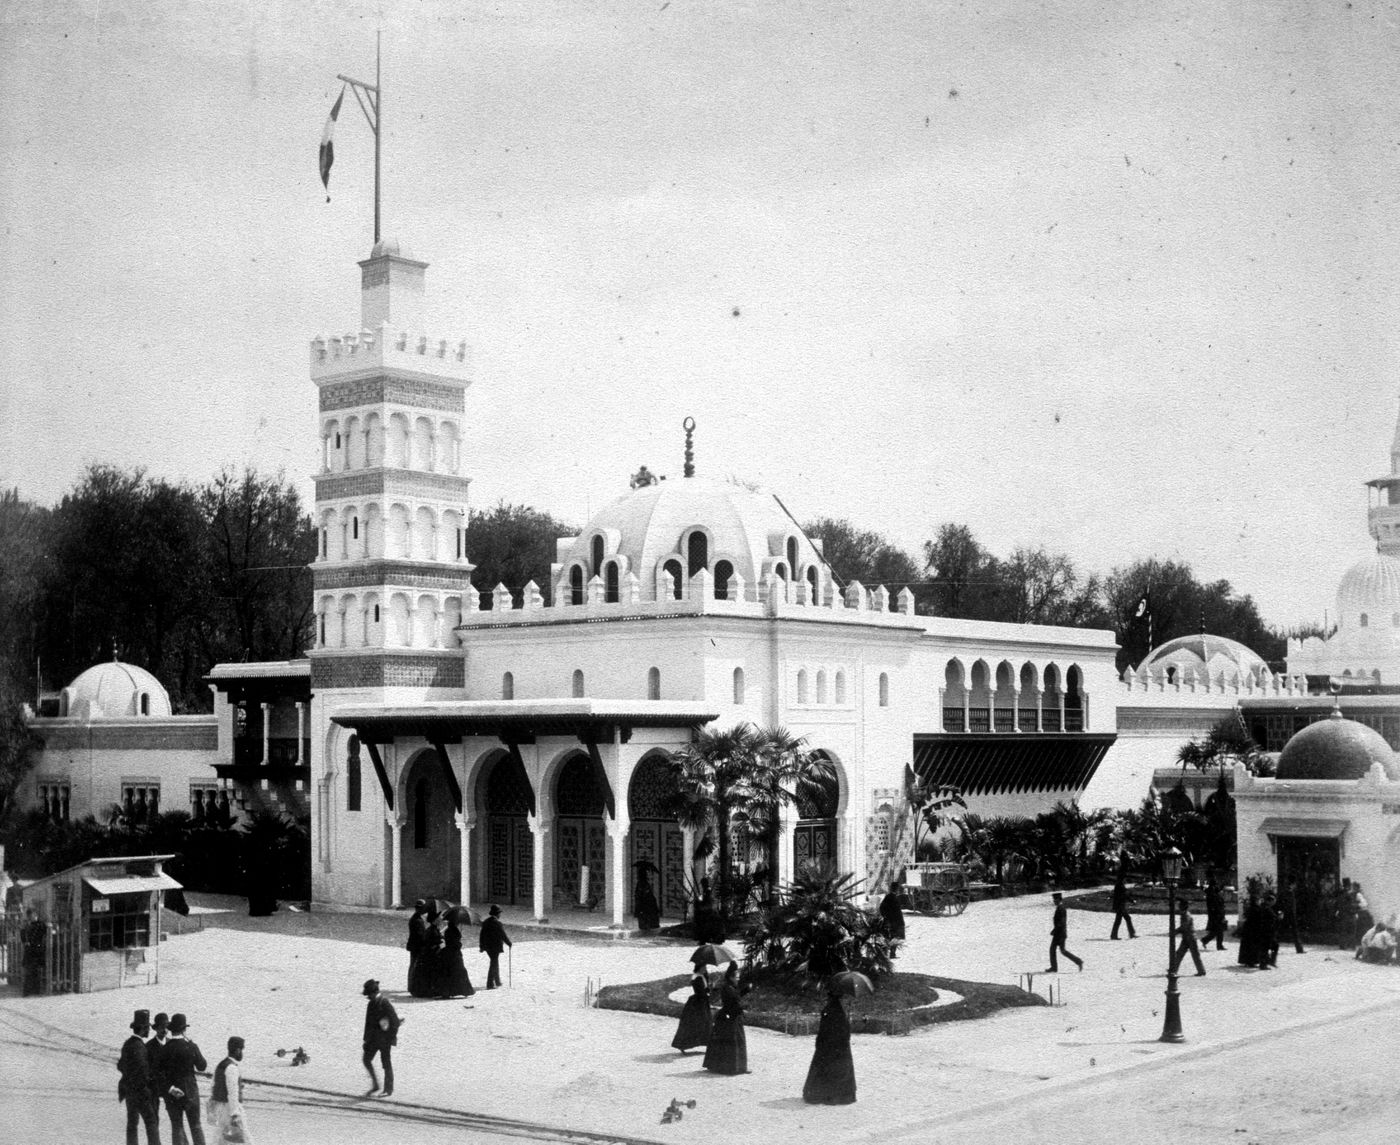 Exposition universelle de 1889 (Paris, France): View of Algerian Pavilion